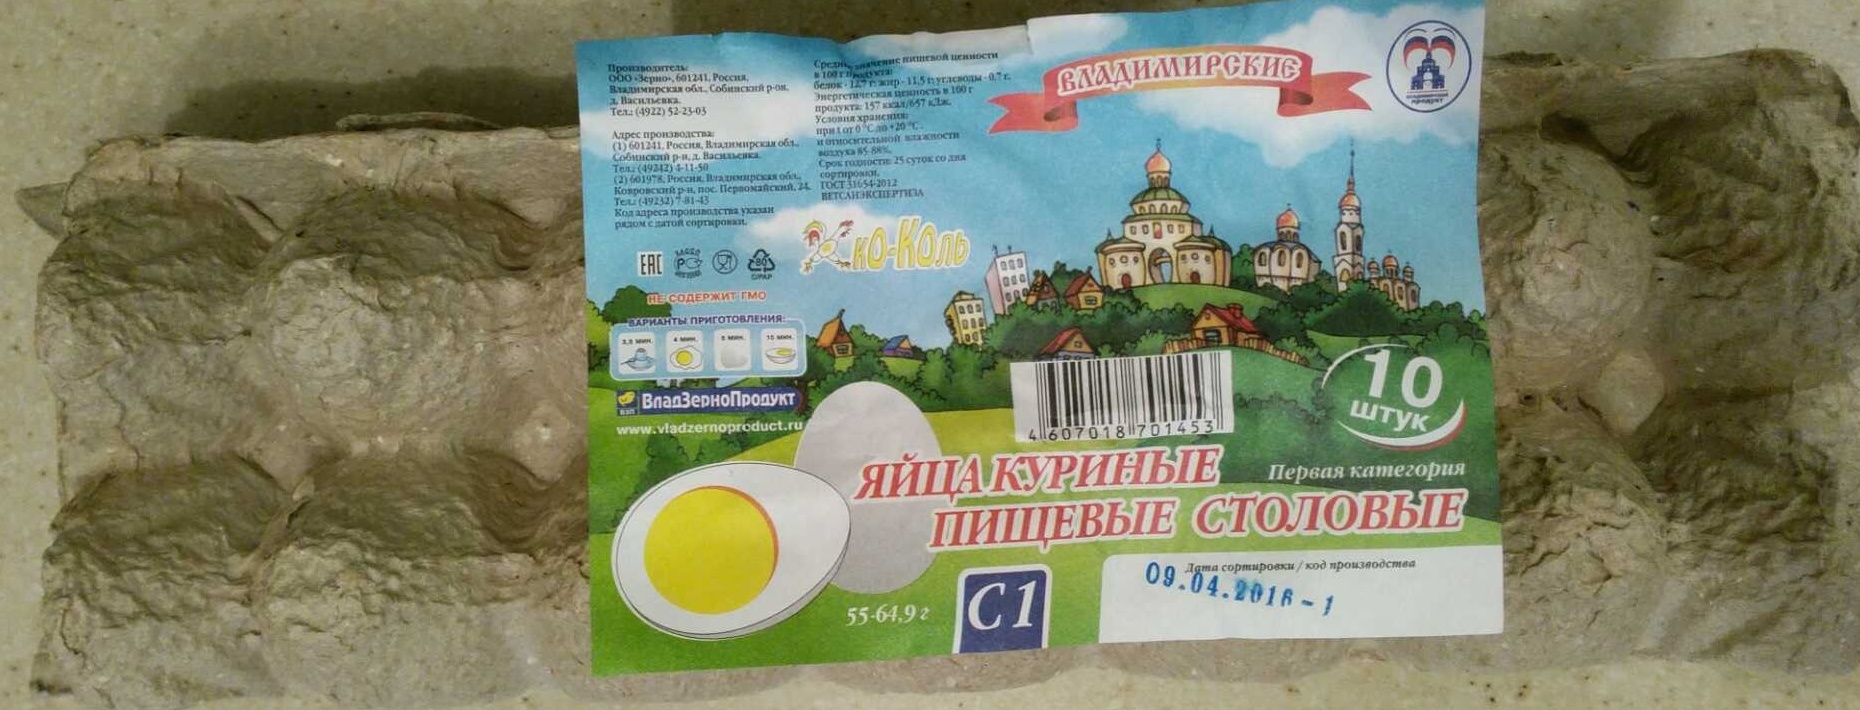 Яйца куриные пищевые столовые первая категория - Produit - ru